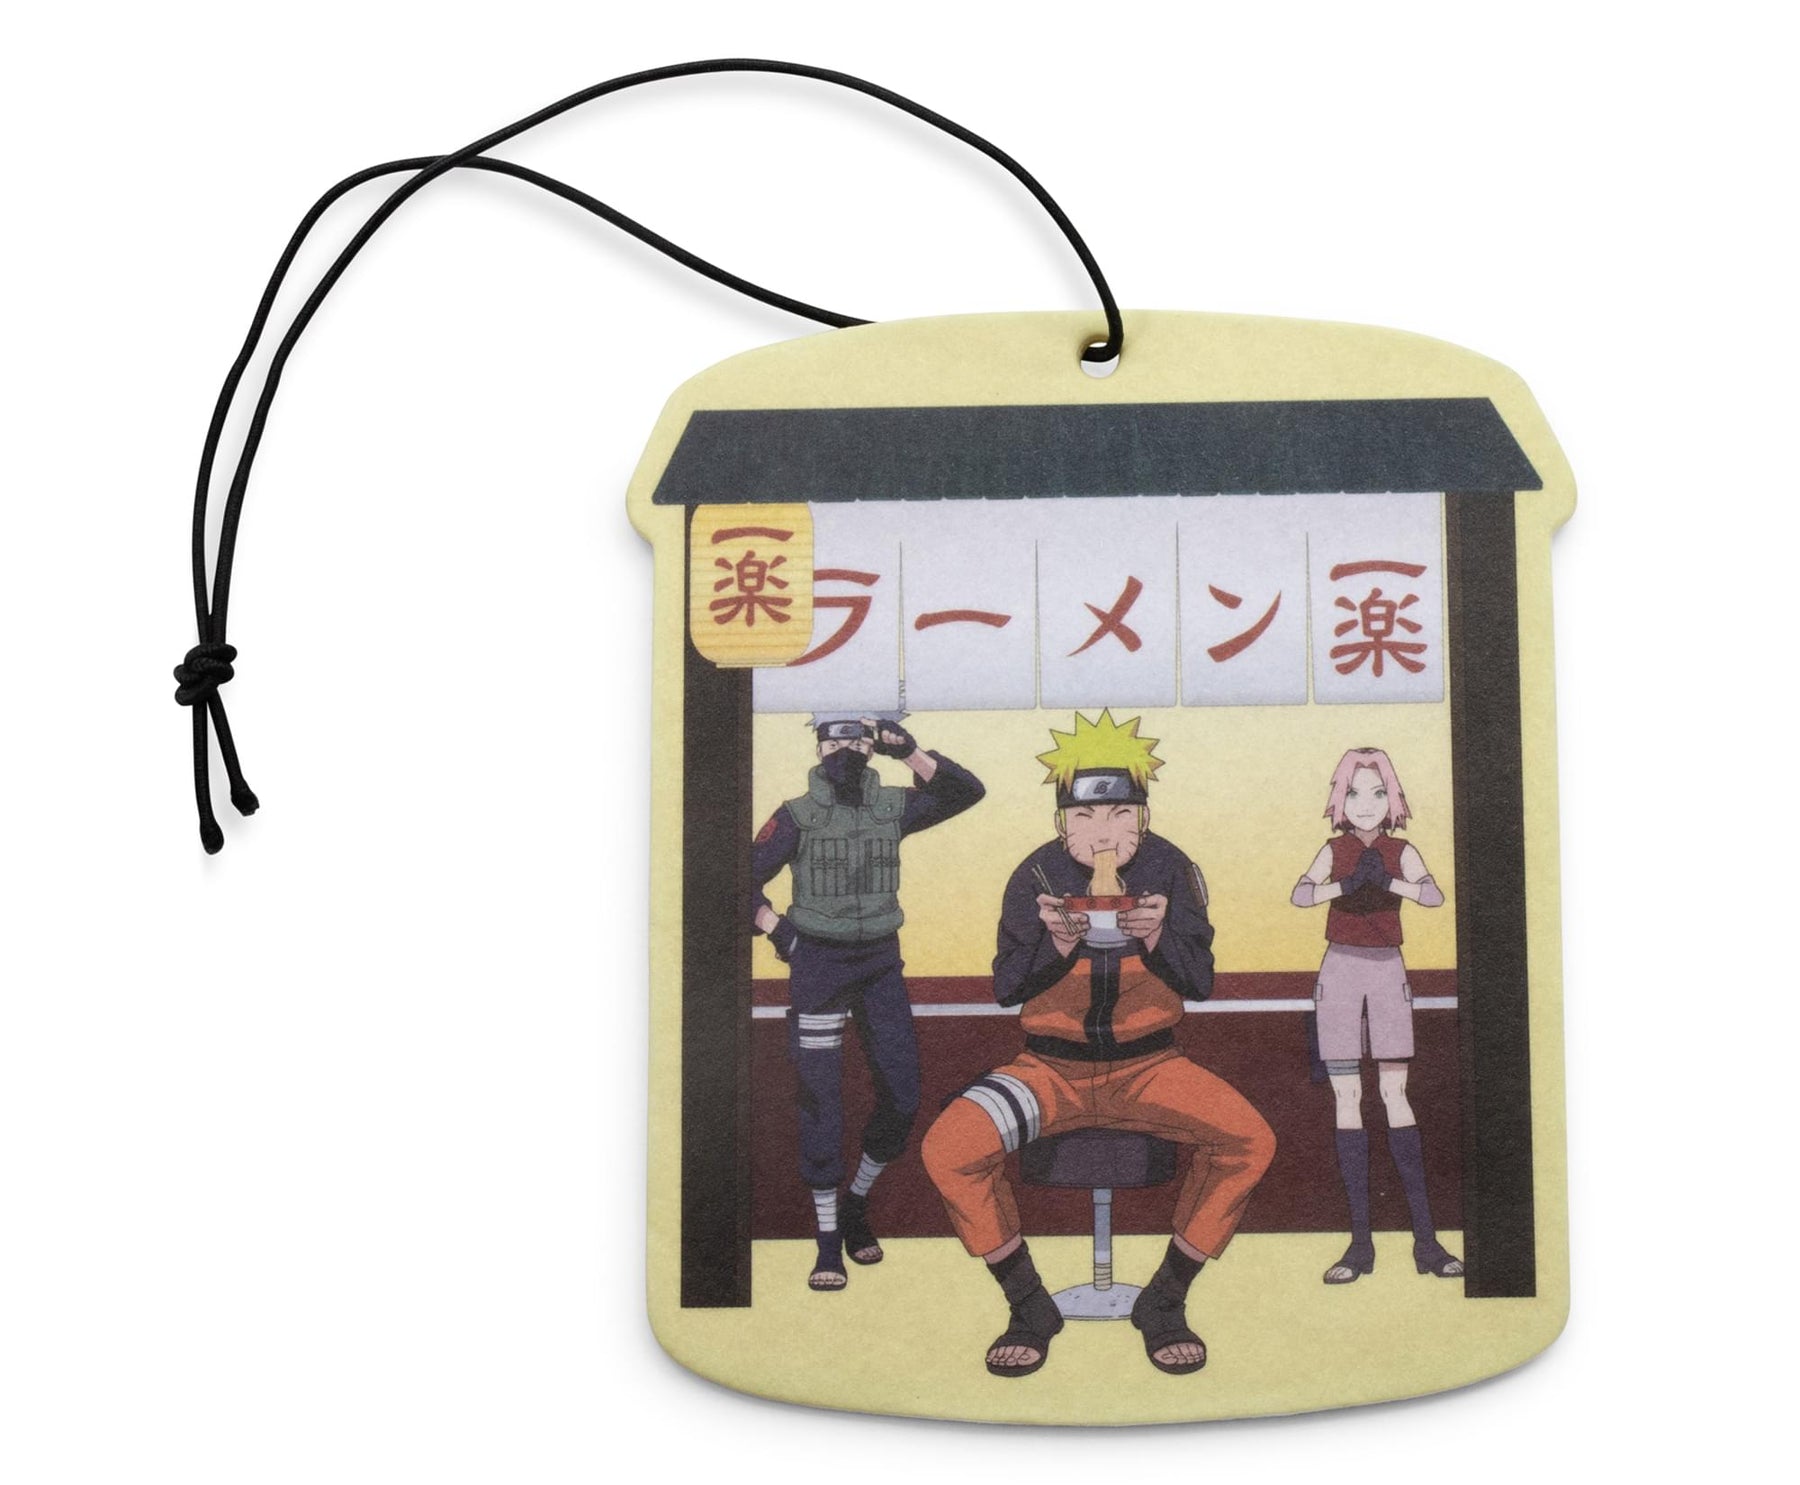 Naruto Shippuden Anime Comic The Lost Tower - Ramen Para Dos